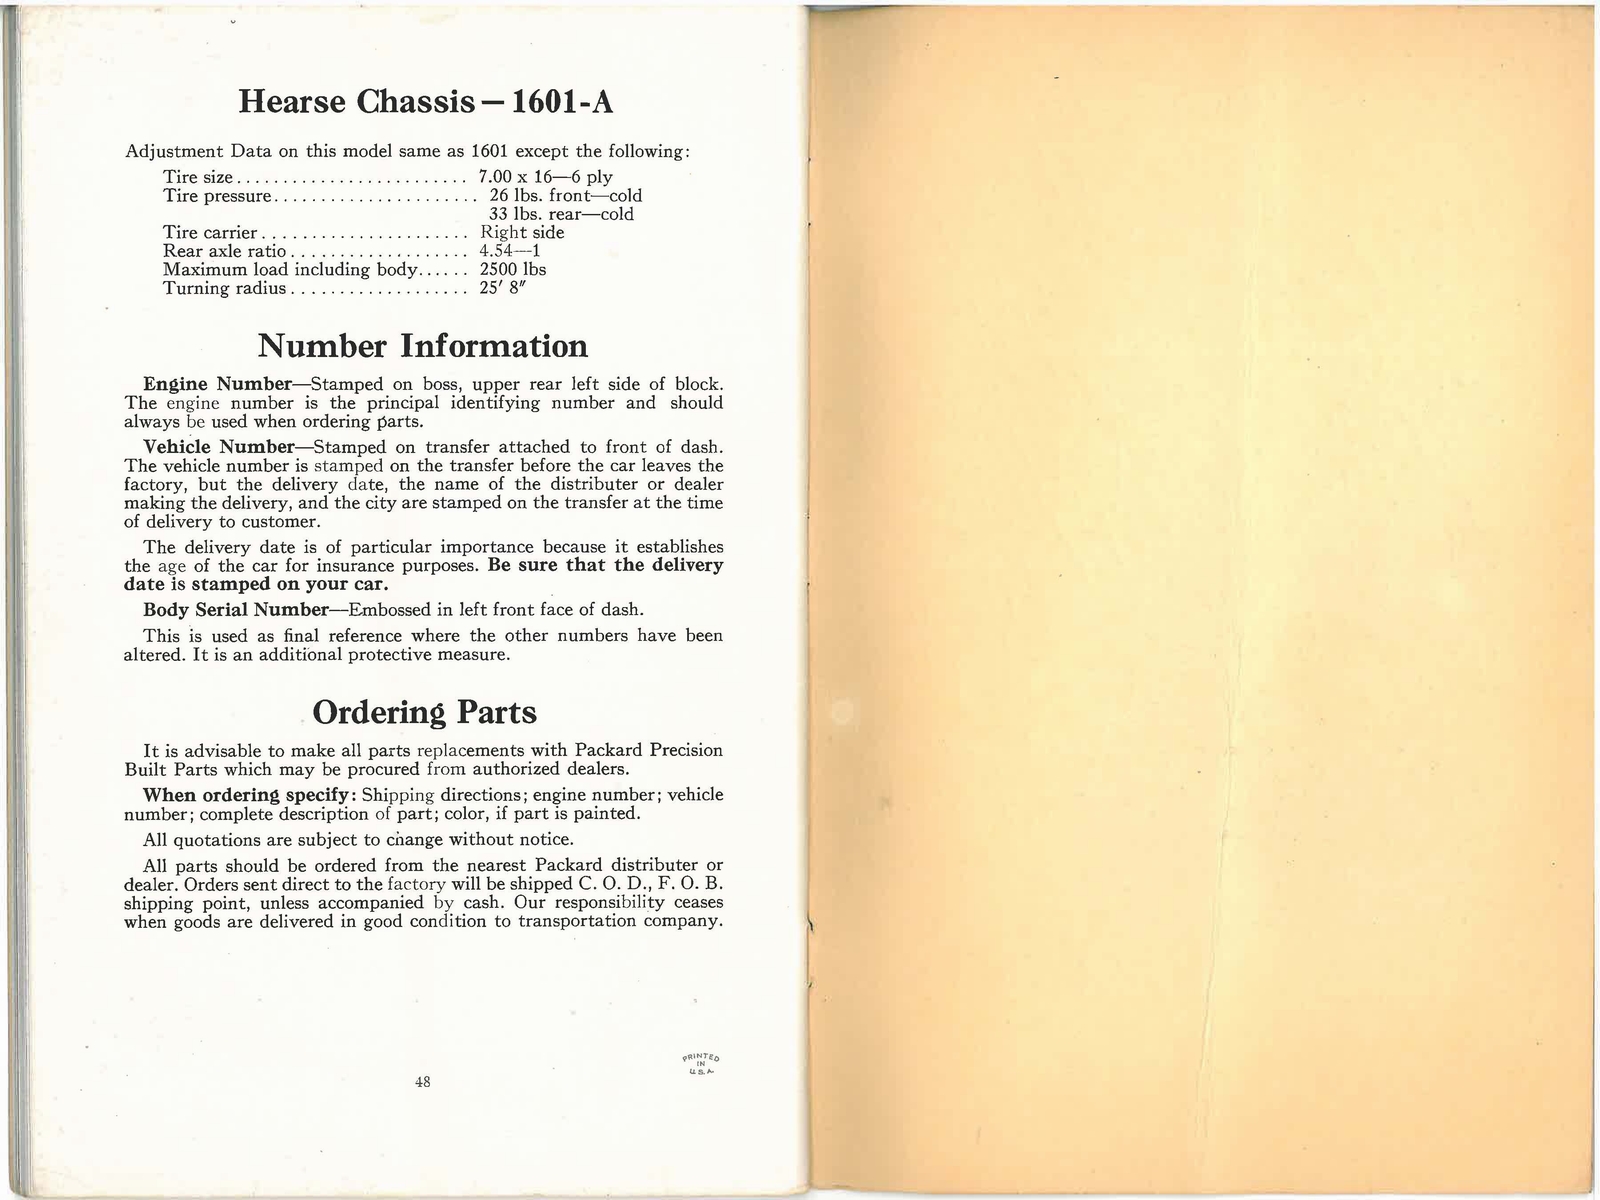 n_1938 Packard Eight Manual-48-49.jpg